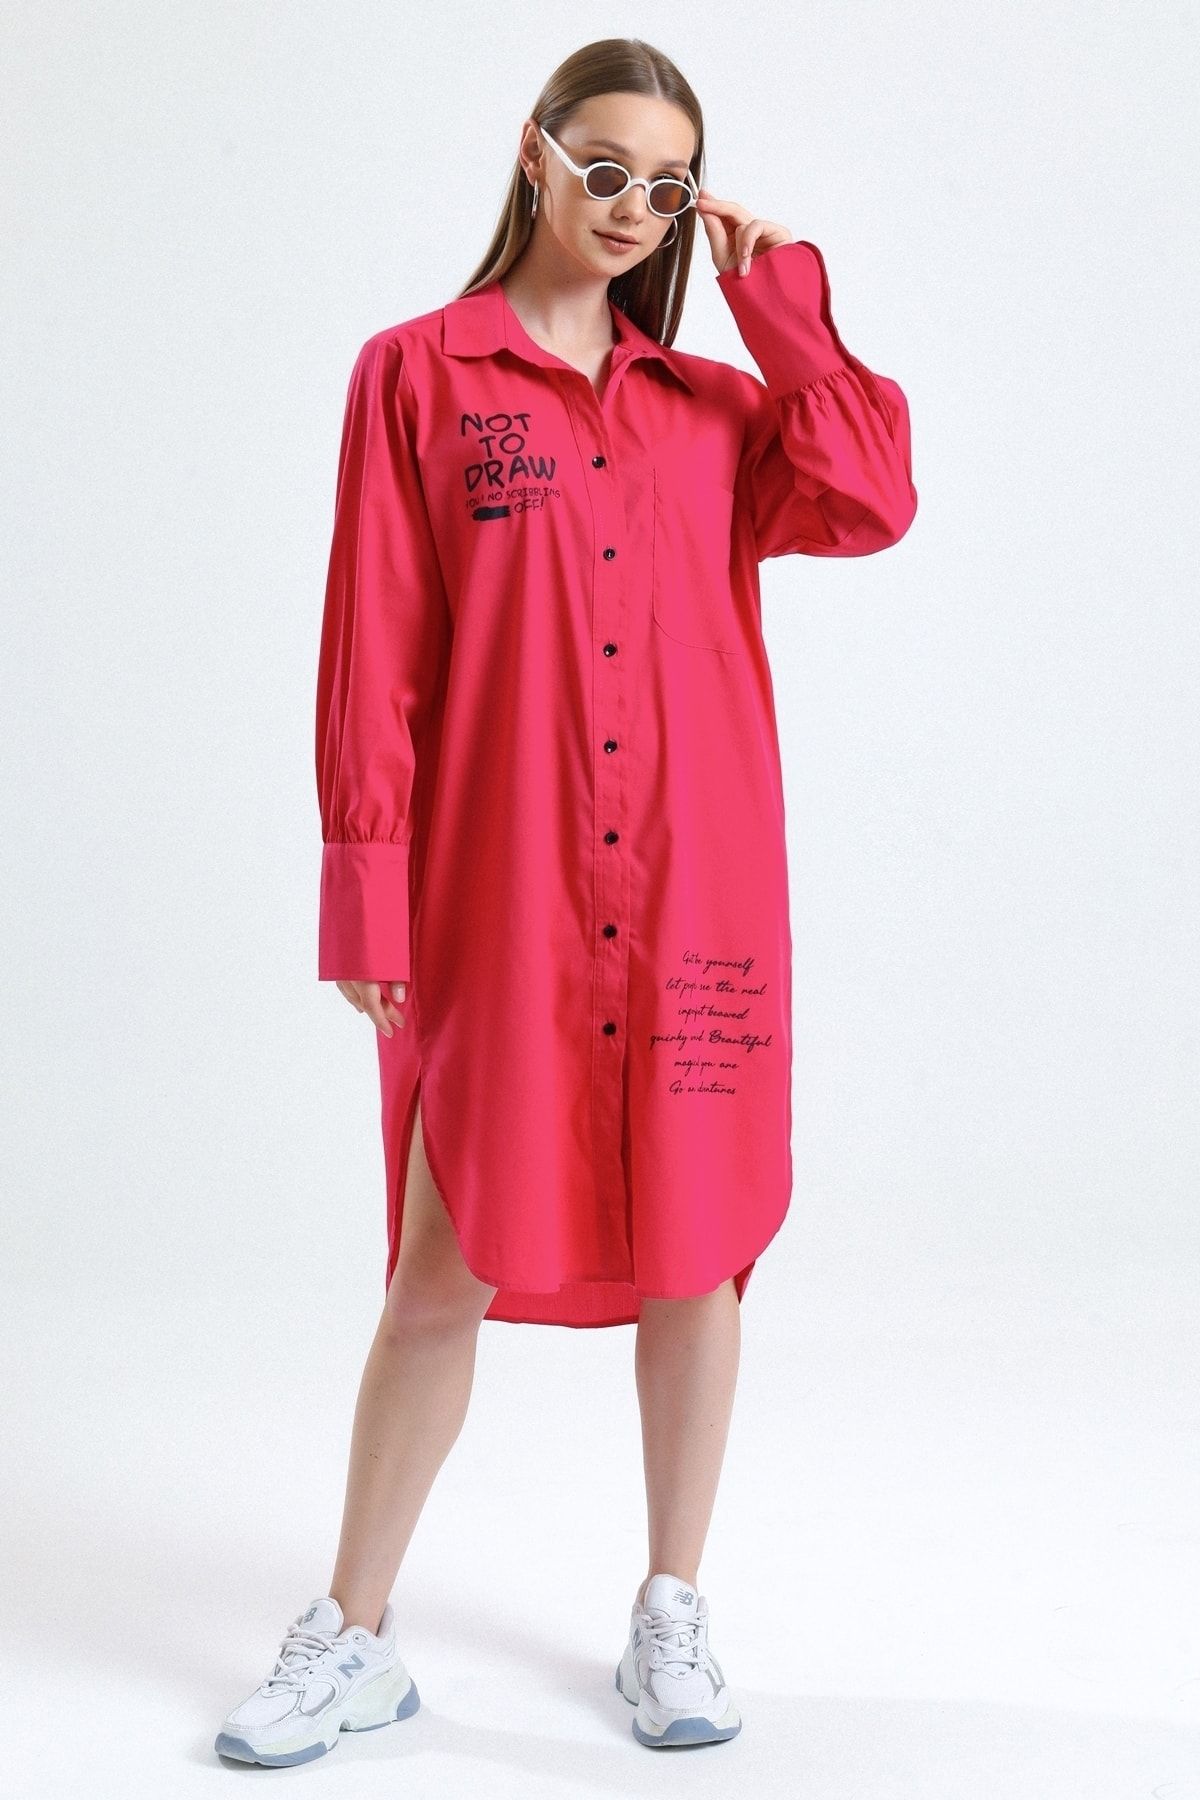 MD trend Kadın Fuşya Baskılı Balon Kollu Oversize Gömlek Tunik